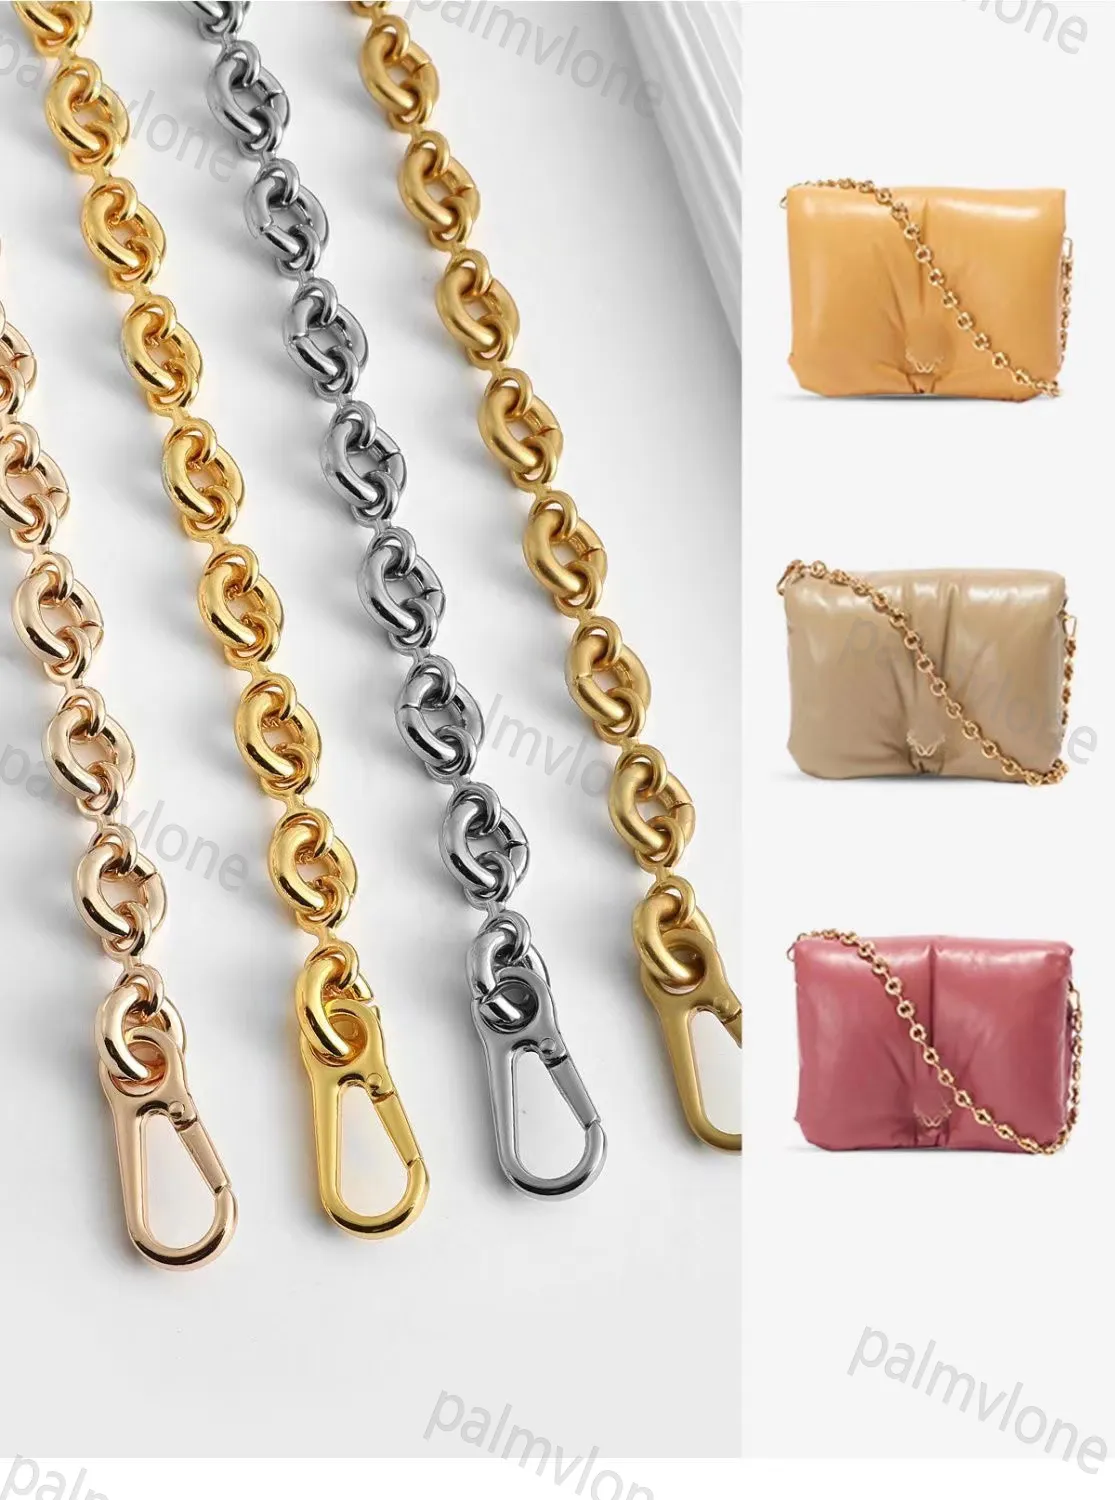 Lowewe bolsos de moda cadena Metal oro plata color gris accesorios de cuerda paquete Original longitud a juego 60cm